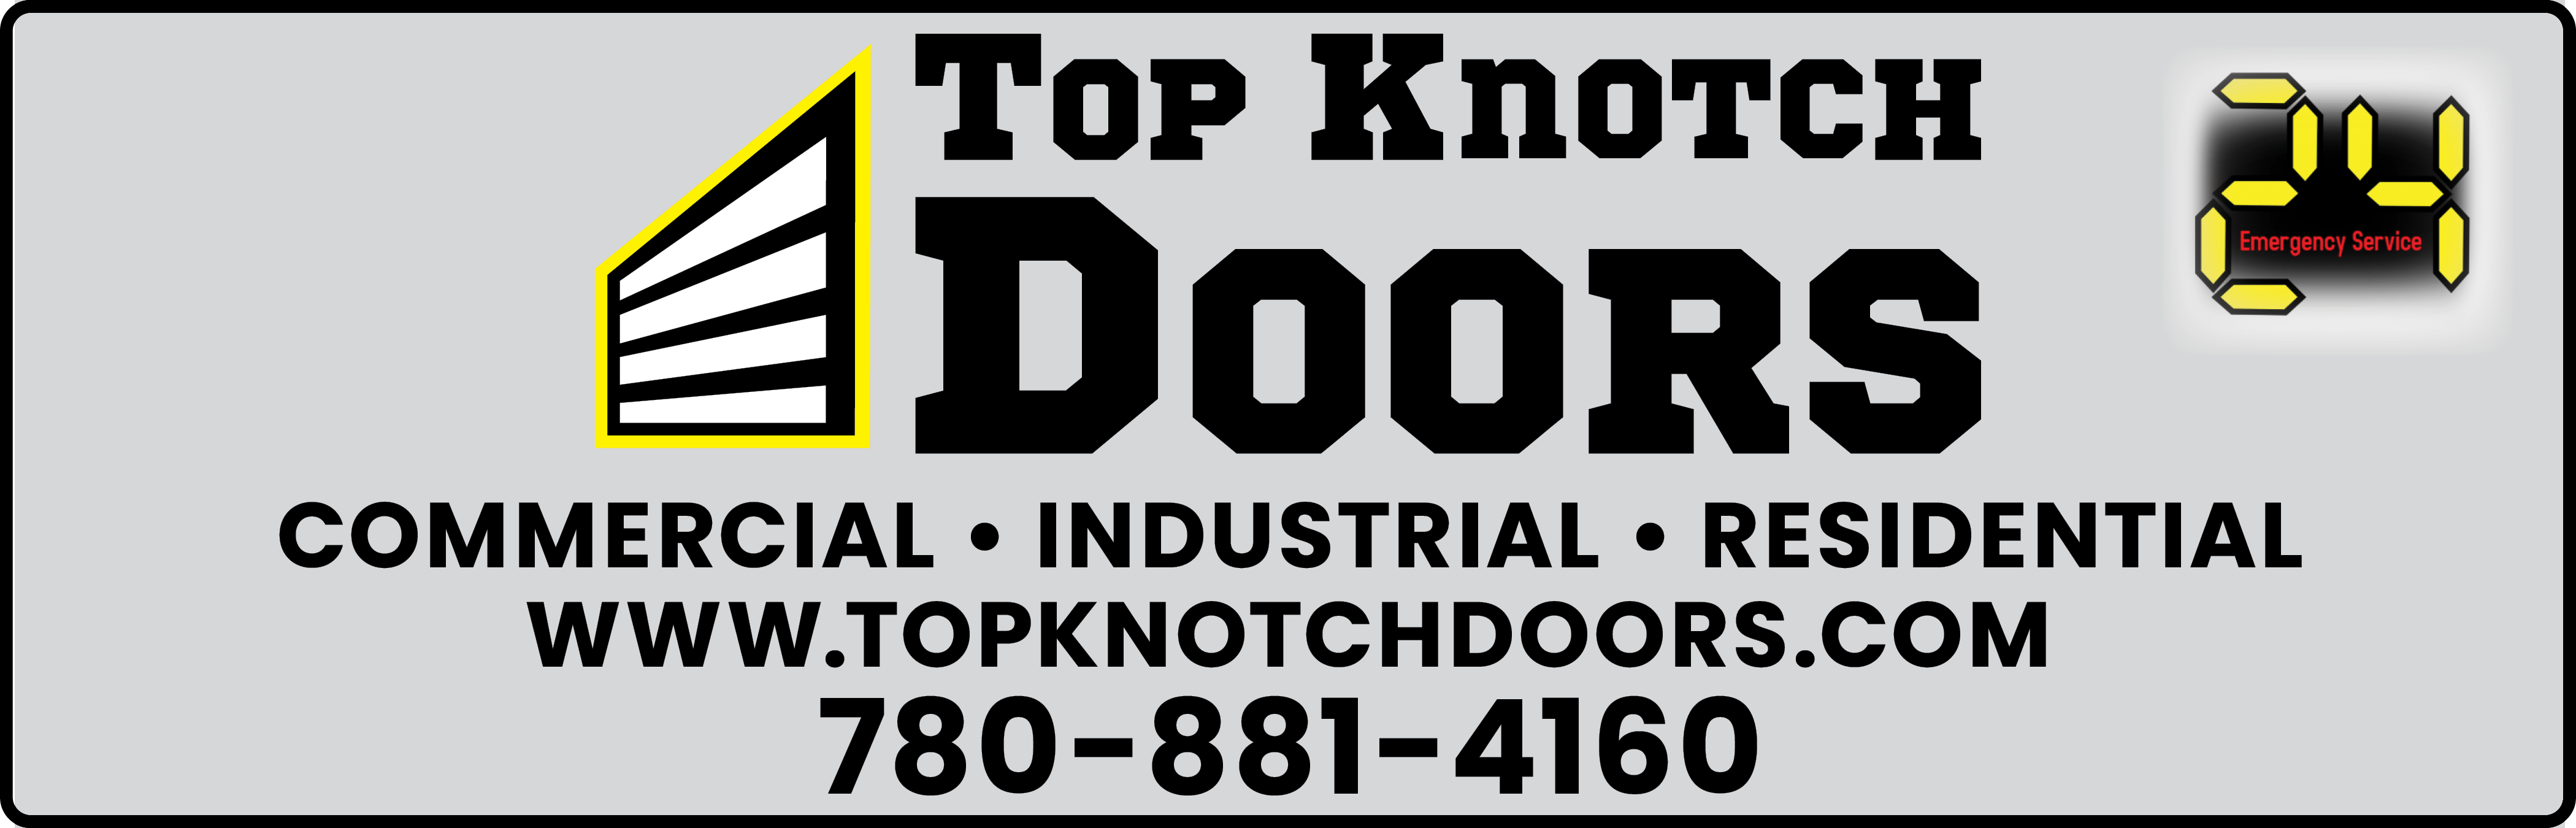 Top Knotch Doors